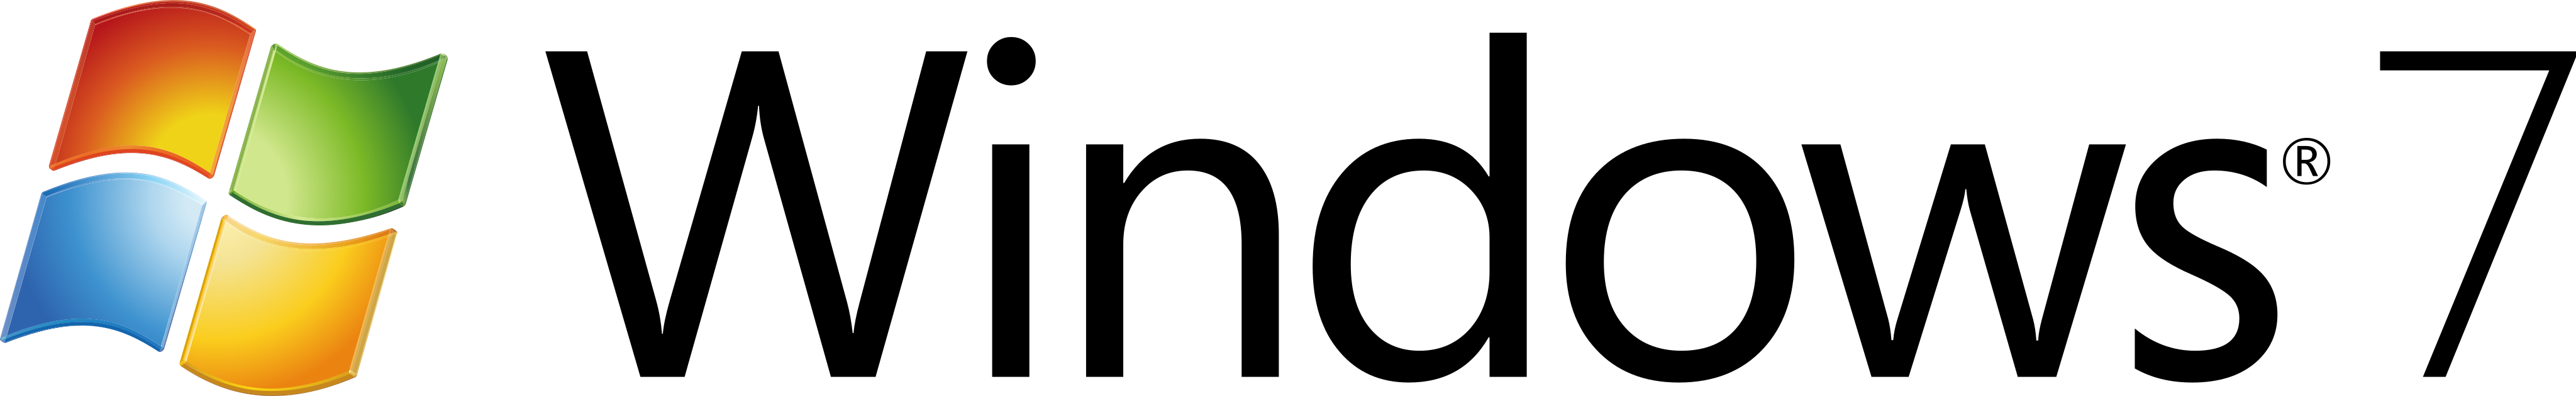 Windows logo PNG Image